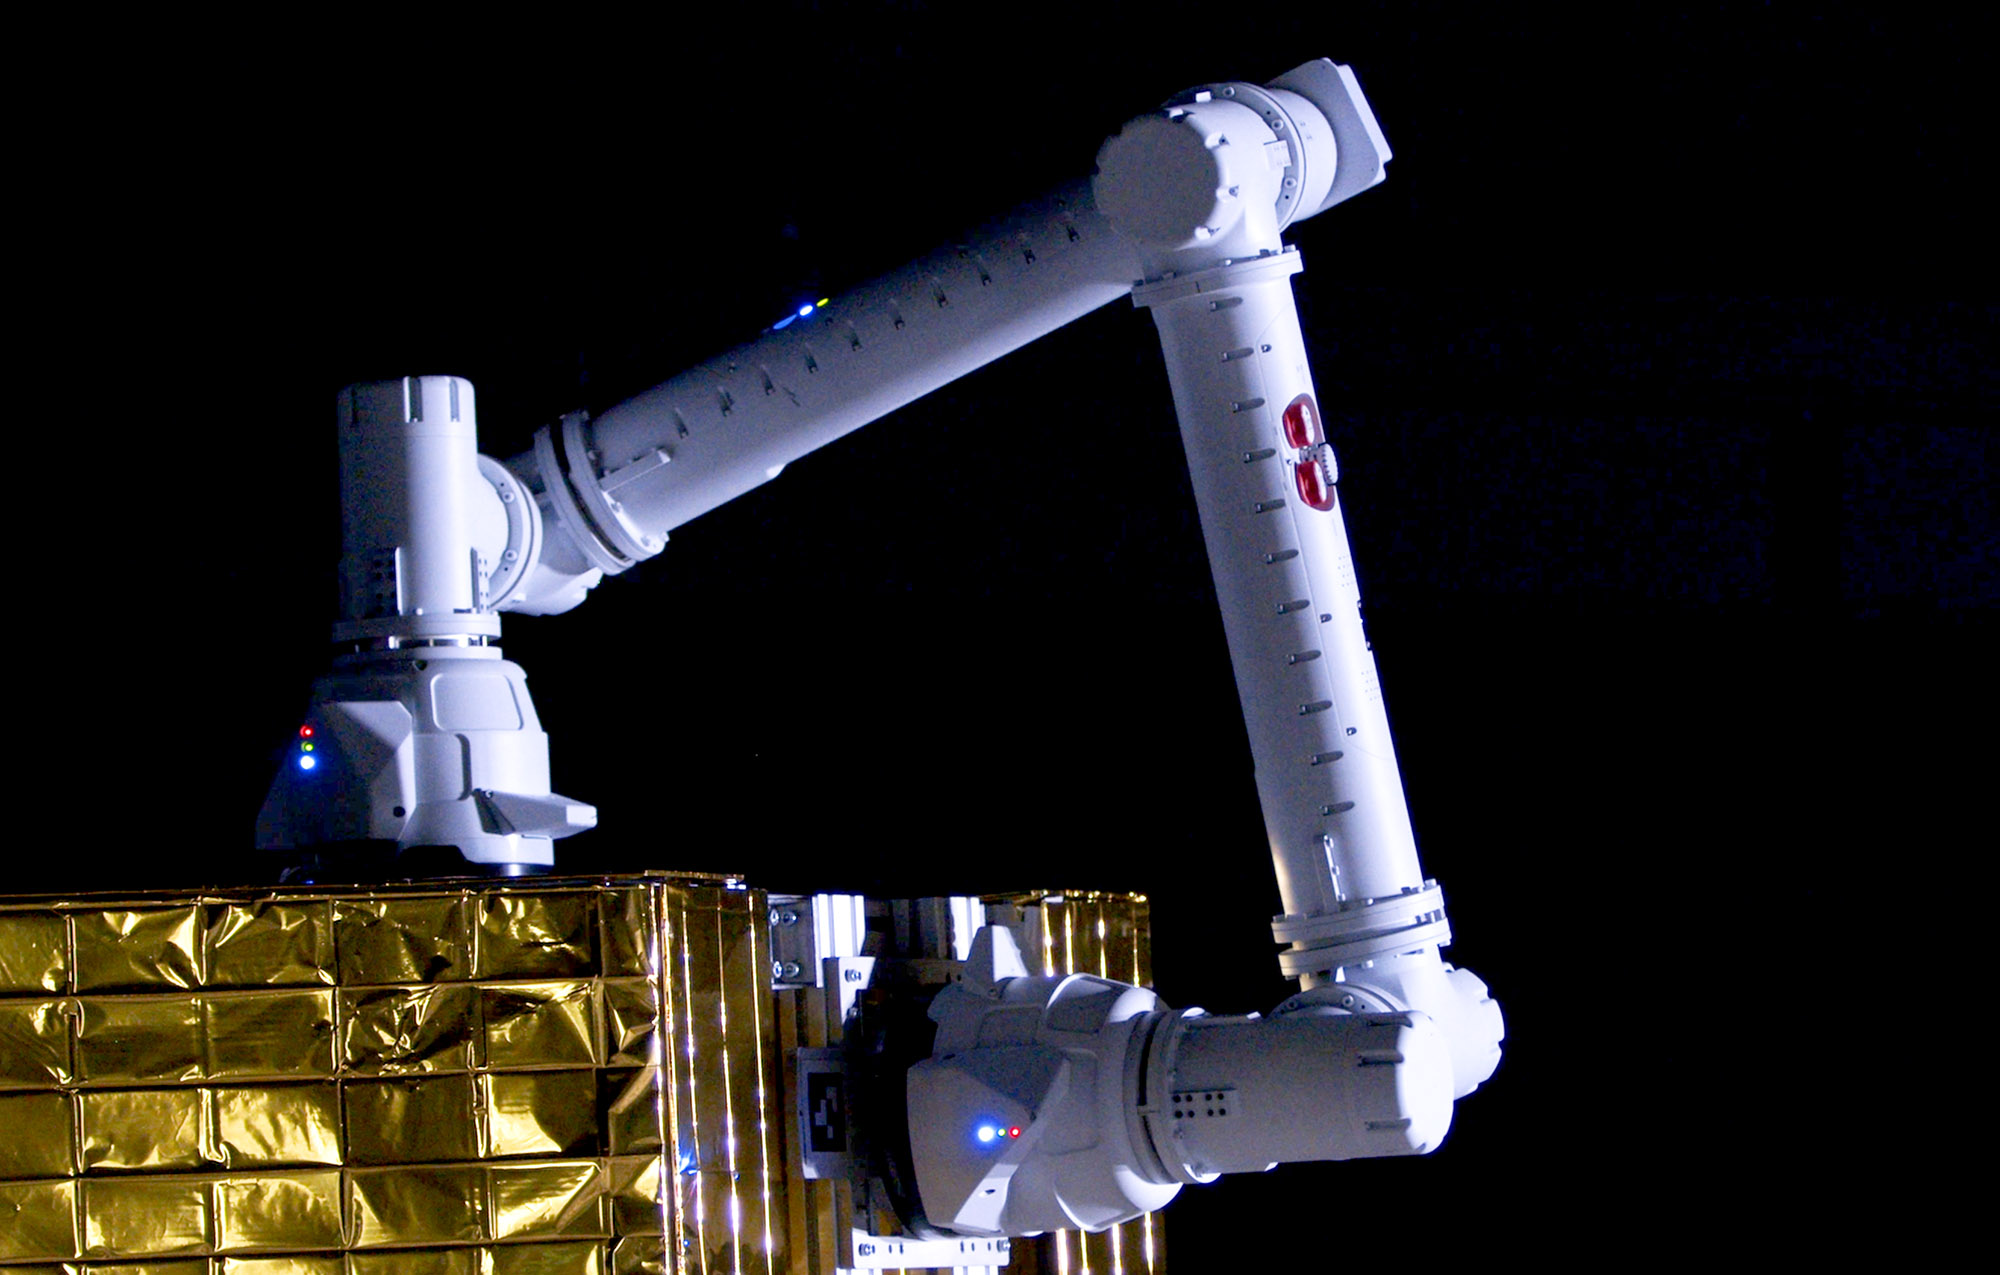 GITAI、宇宙ロボットの作業性能を大幅に拡張する”シャクトリ虫” 型ロボットアームを開発、設計検証試験（TRL 3）を完了